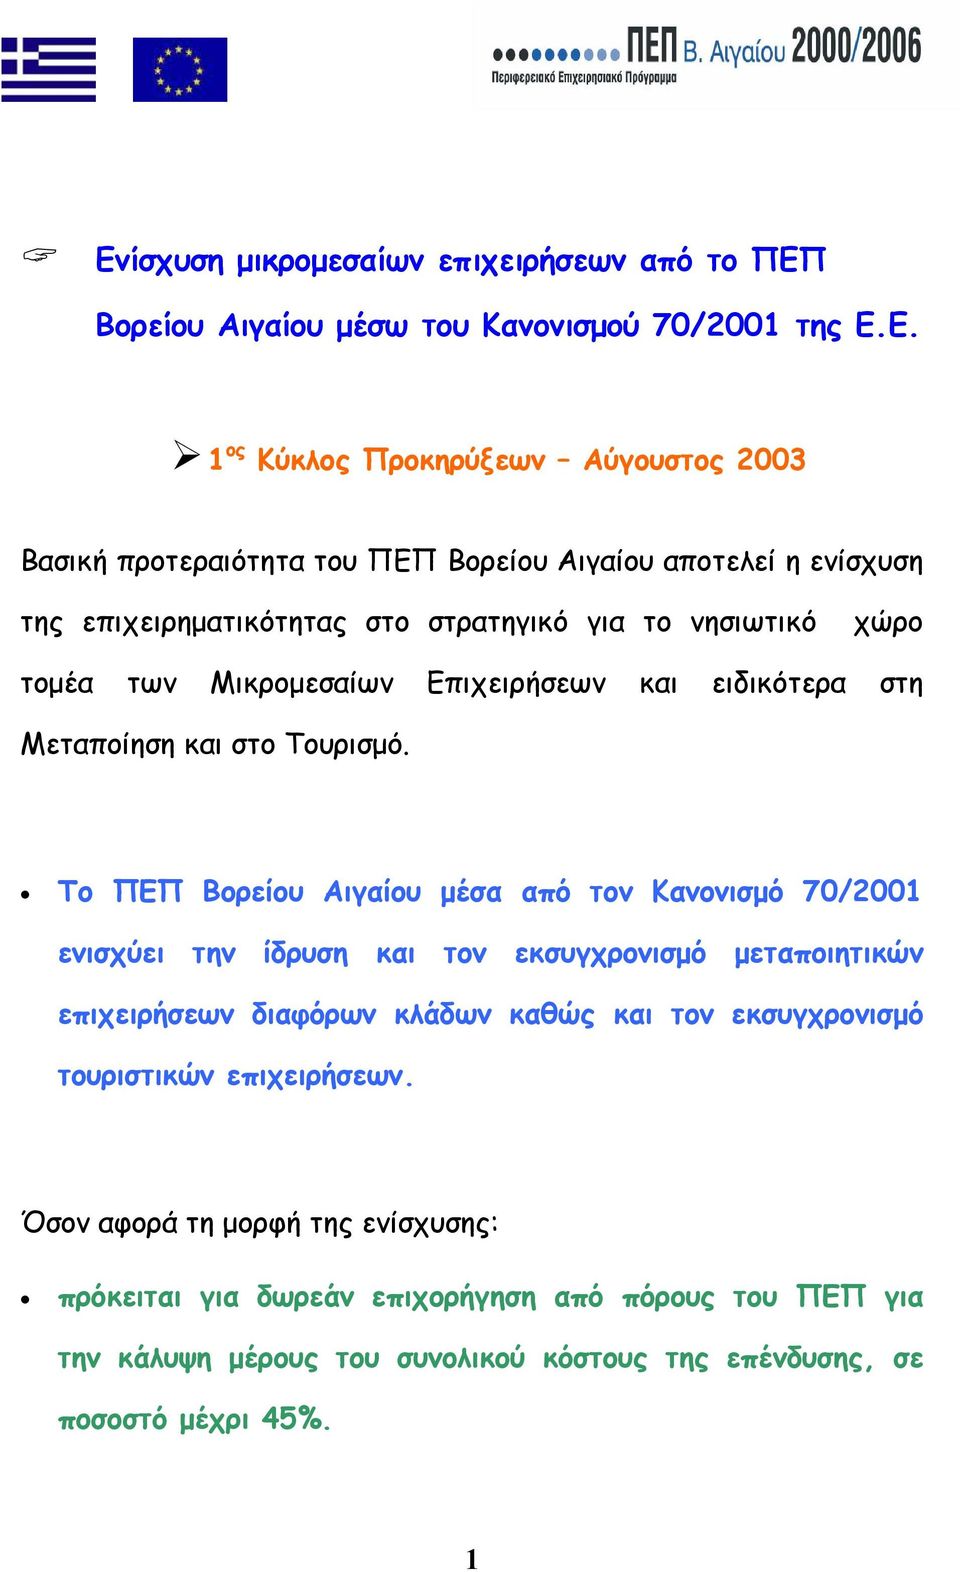 Το ΠΕΠ Βορείου Αιγαίου µέσα από τον Κανονισµό 70/2001 ενισχύει την ίδρυση και τον εκσυγχρονισµό µεταποιητικών επιχειρήσεων διαφόρων κλάδων καθώς και τον εκσυγχρονισµό